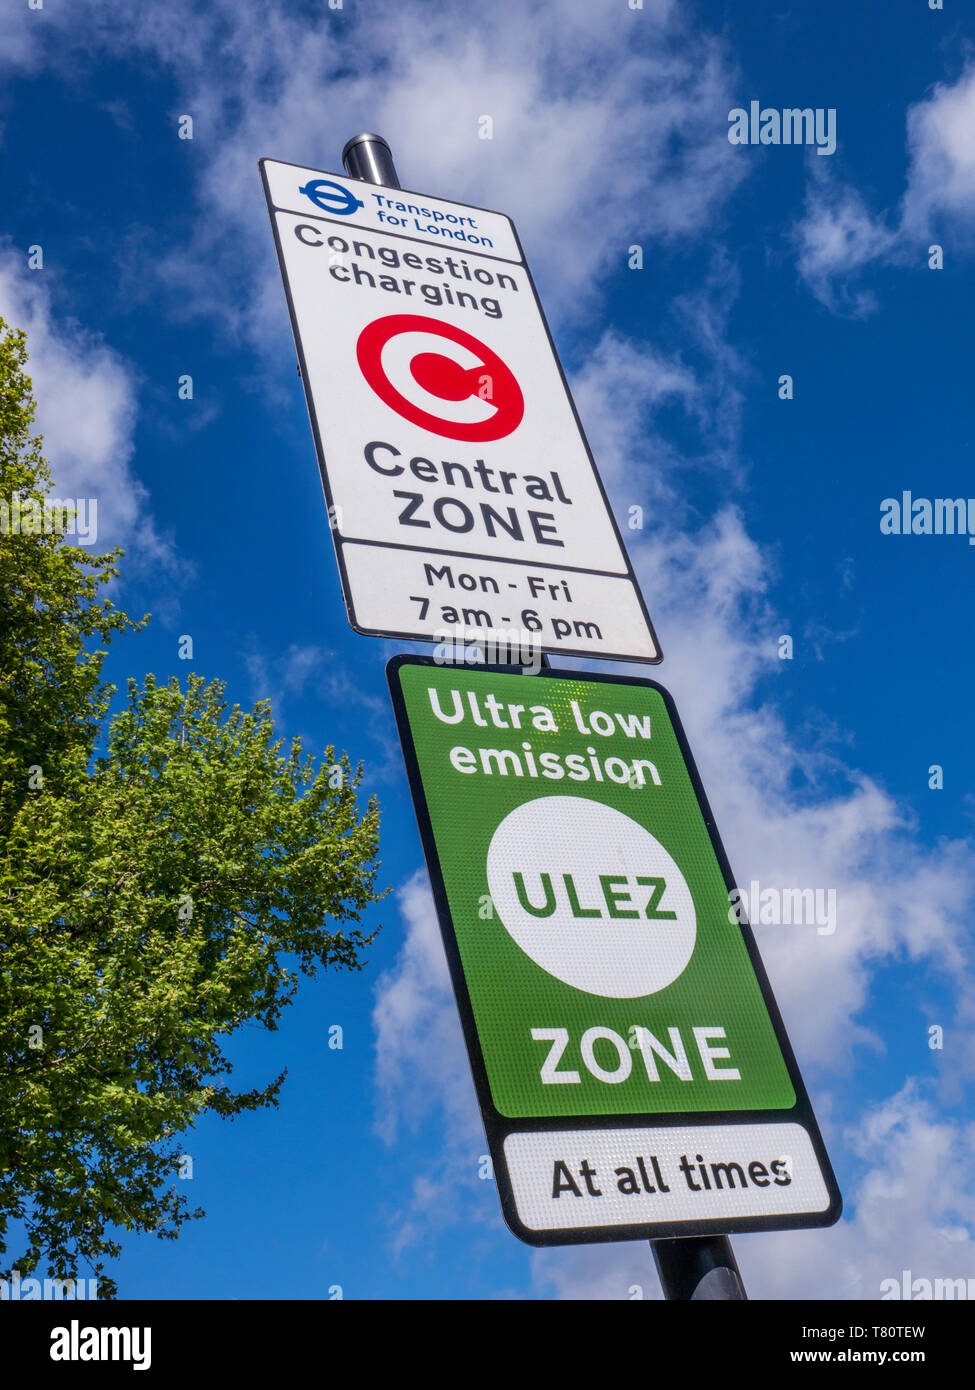 'ULEZ' TFL traffico di congestione/emissione carica centrale London zone segno con 'ULEZ' ultra basso zona segno contro cielo blu con albero in verde fresco foglia SE11 Foto Stock